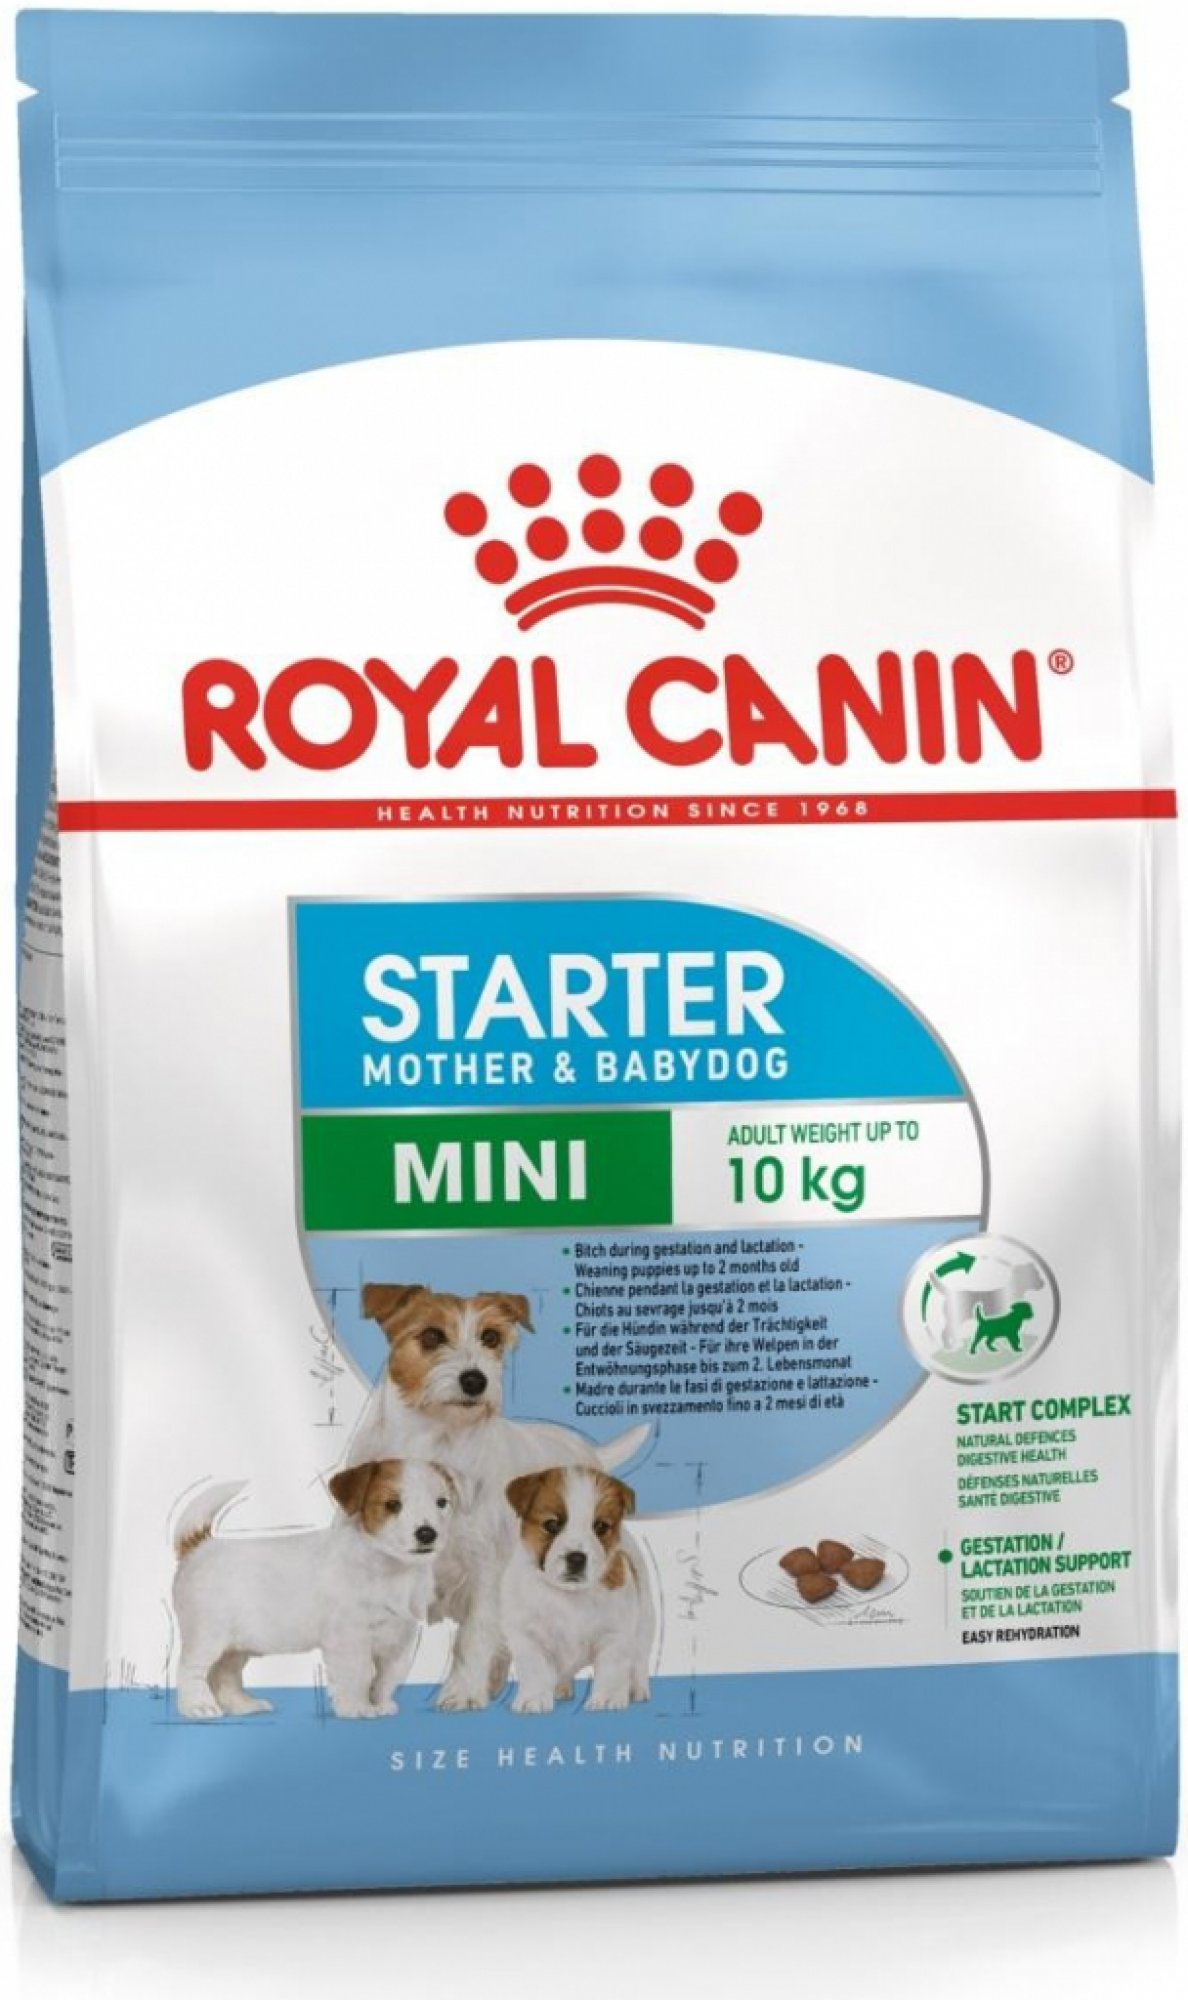 Royal Canin Starter Mother & Babydog Mini 8kg